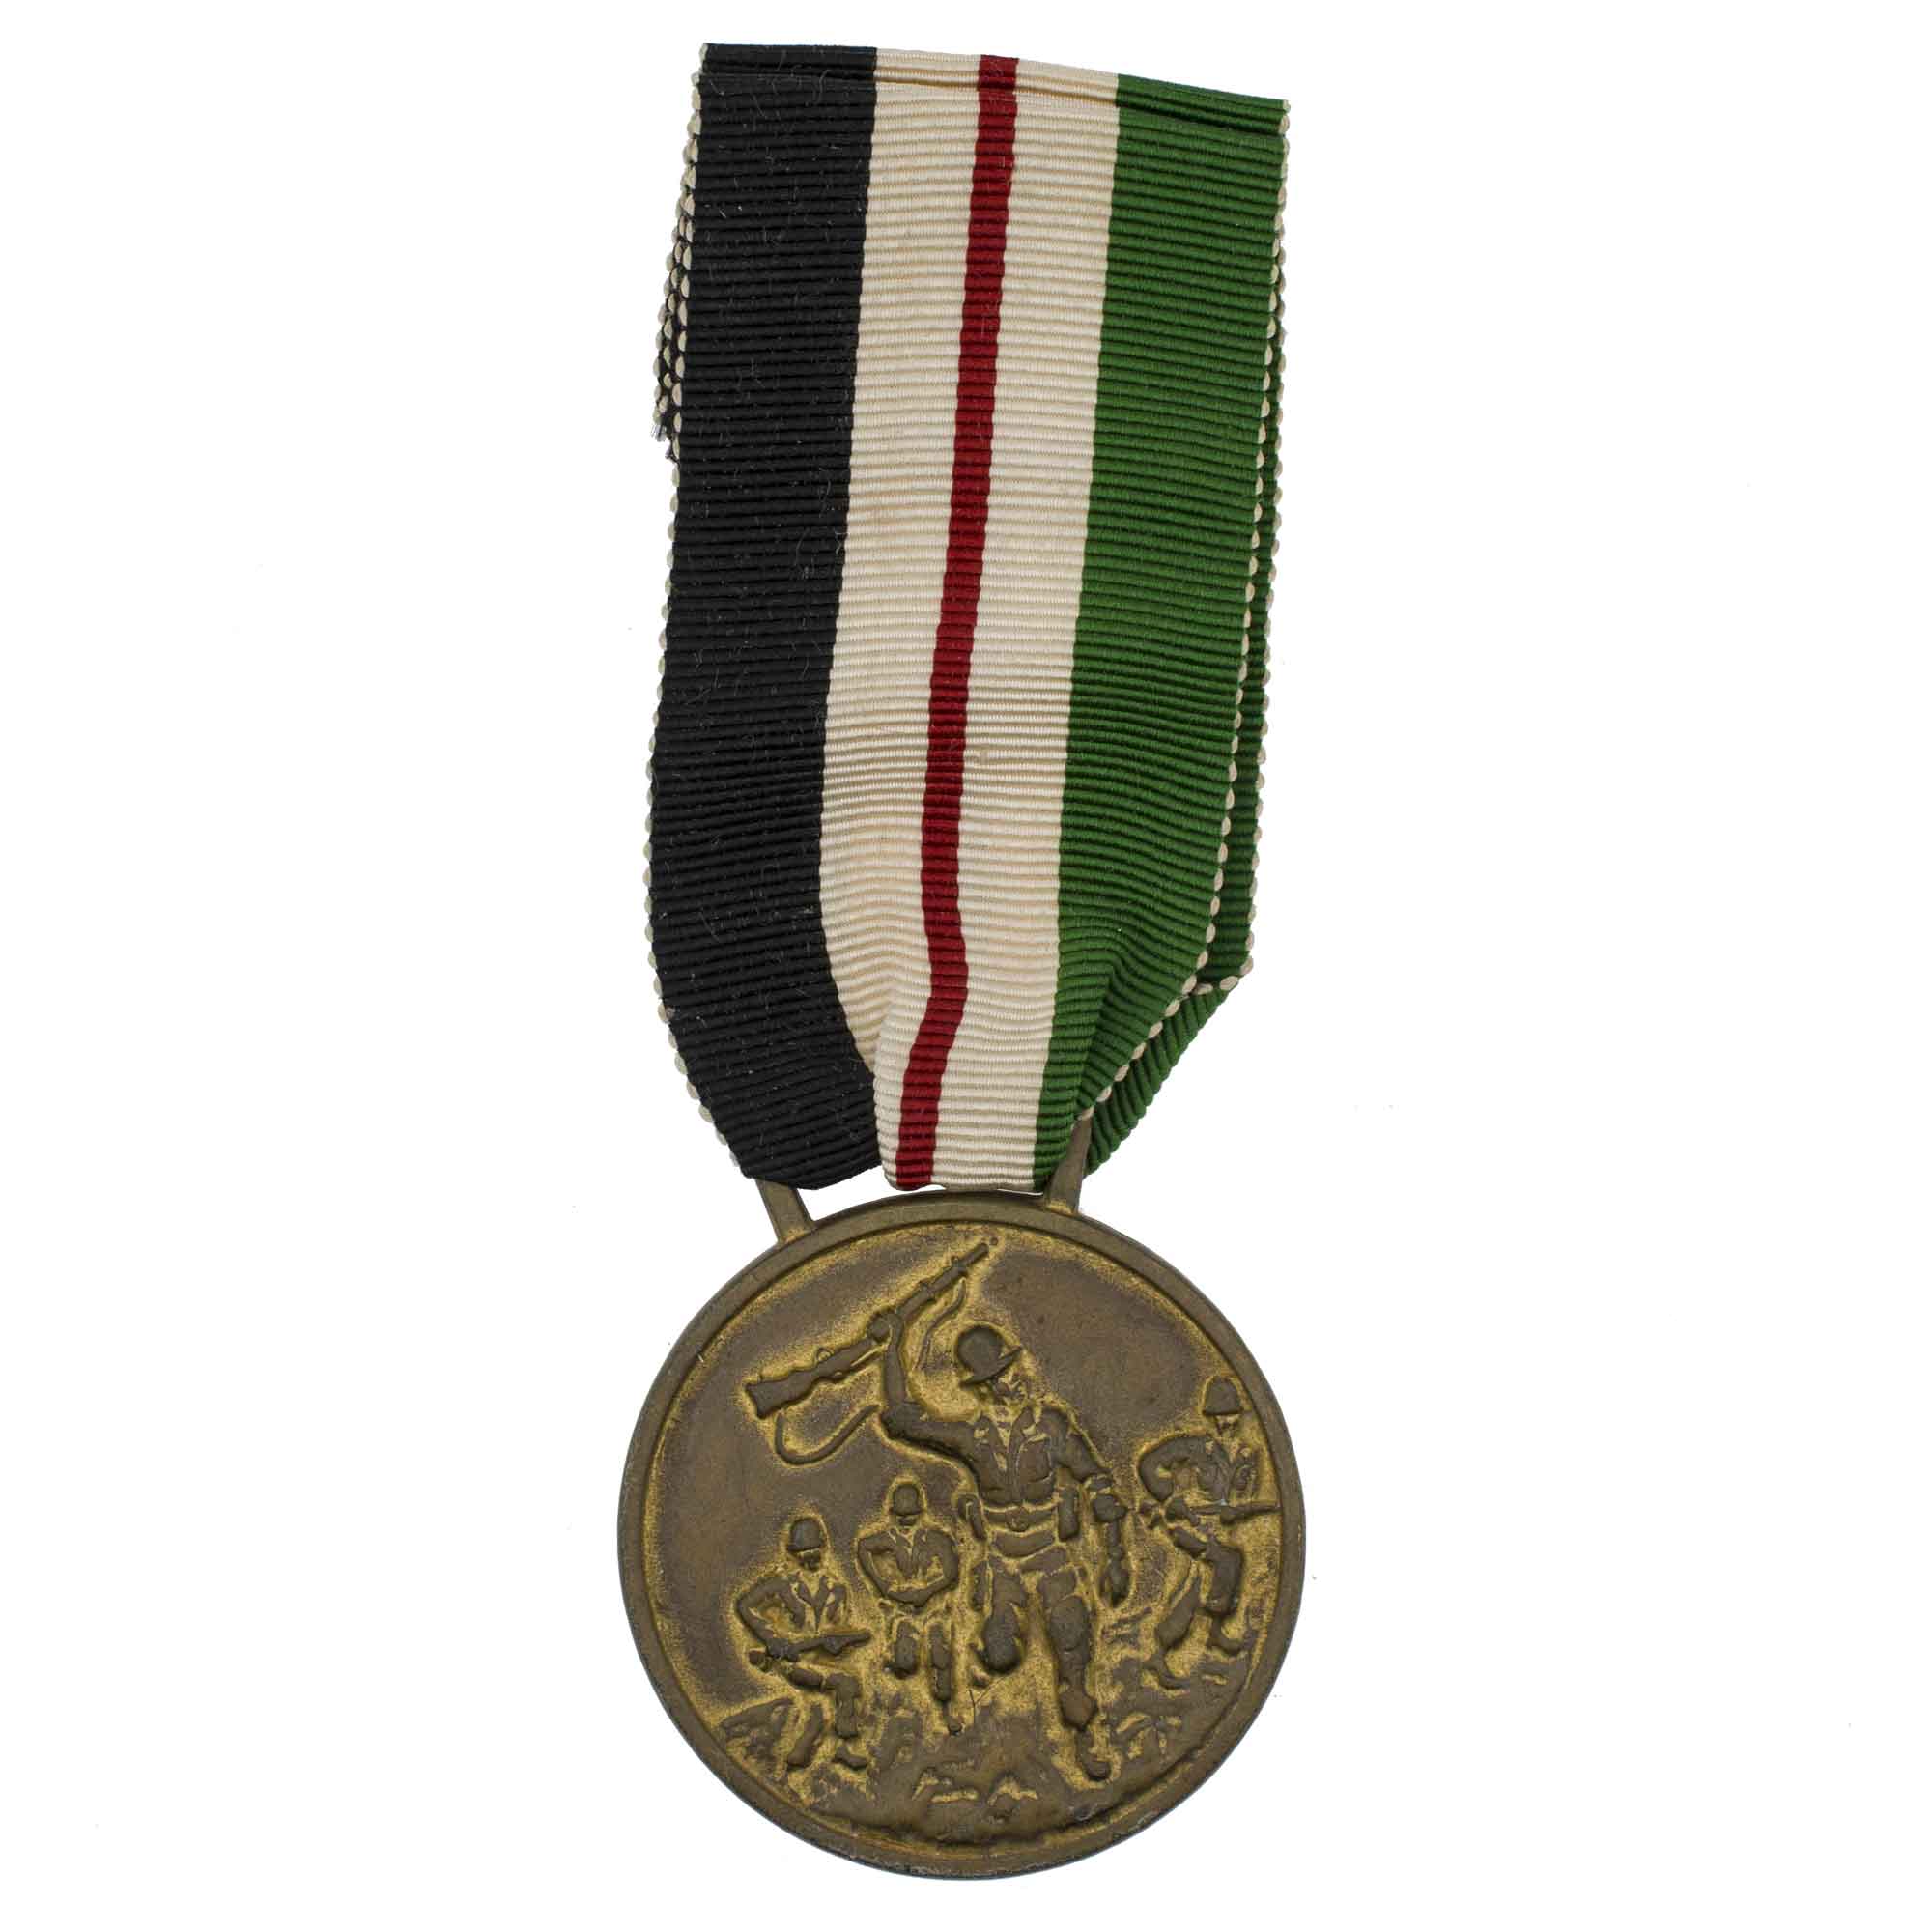 Иордания. Медаль "За успехи в командовании" 1986 г.